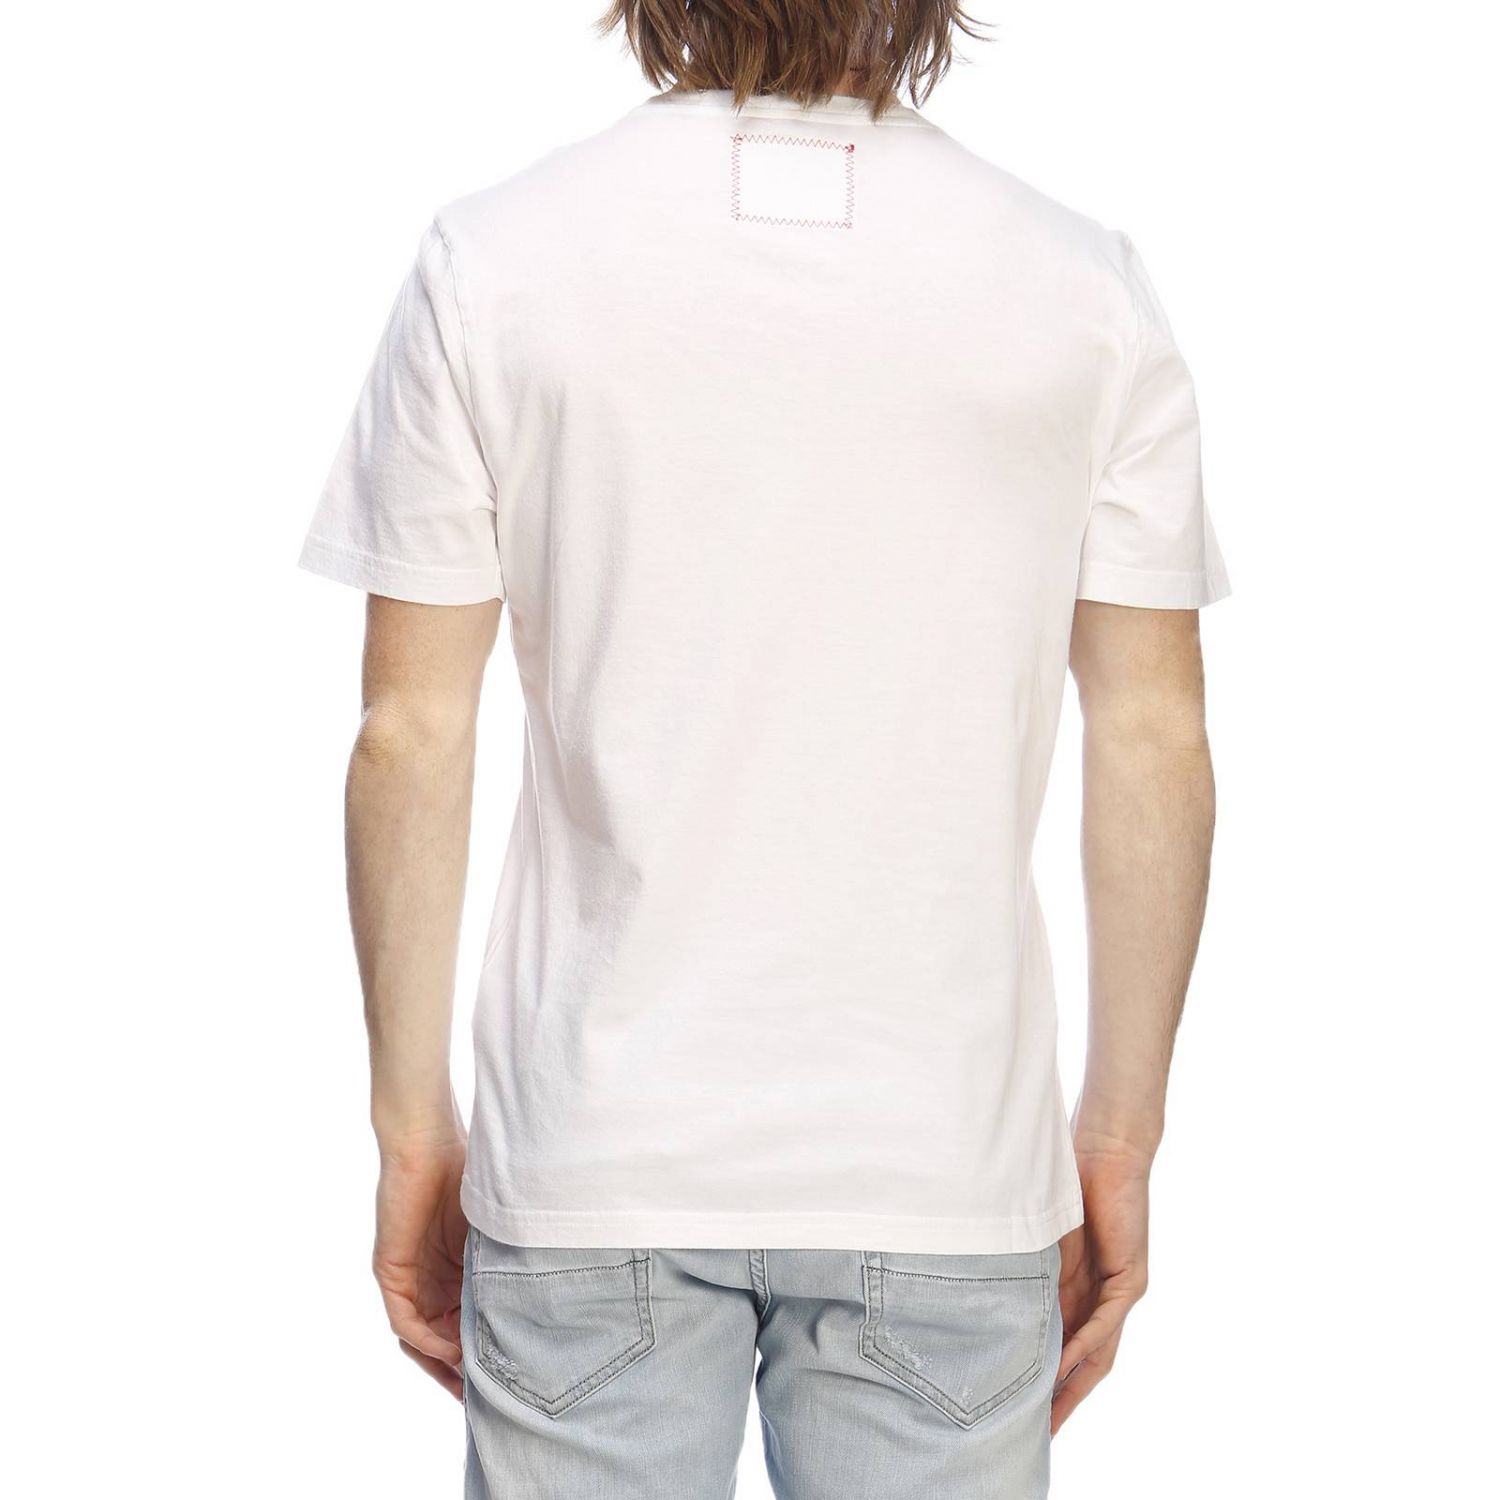 Hydrogen Outlet: T-shirt men | T-Shirt Hydrogen Men White | T-Shirt ...